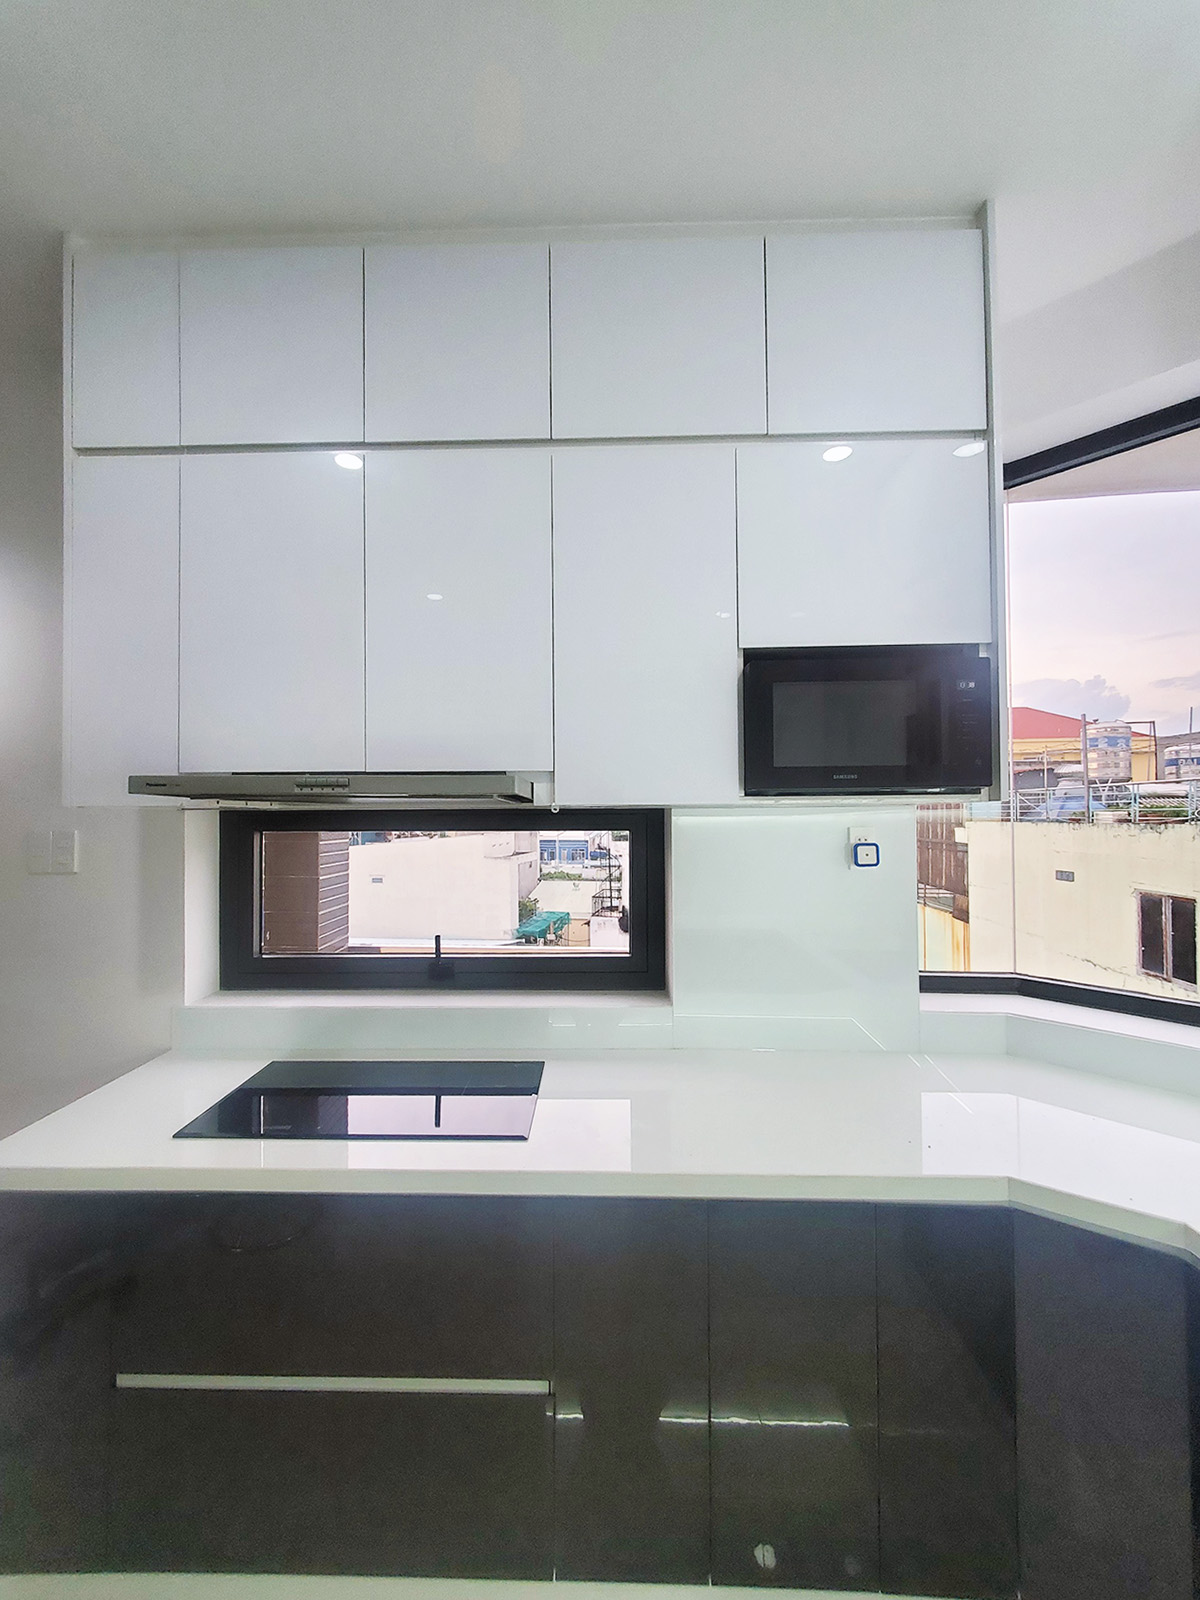 Phòng bếp, phong cách Hiện đại Modern, hoàn thiện nội thất, nhà phố Gò Vấp